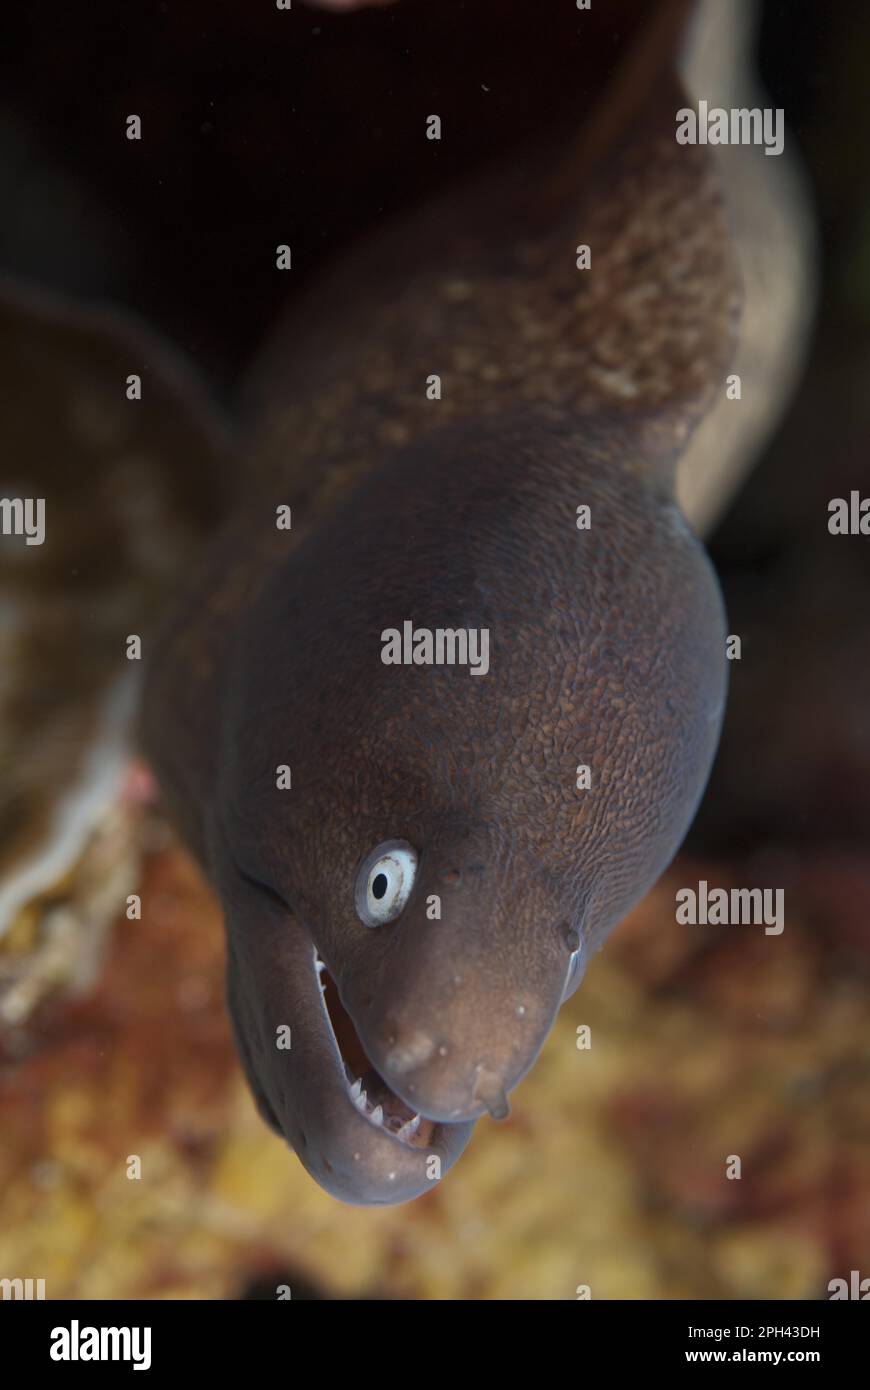 Siderea prosopeion, Gymnothorax thyrsoideus, White-eyed moray eel (Siderea thyrsoidea), white-eyed moray eel, Animals, Other animals, Fish, Moray Stock Photo